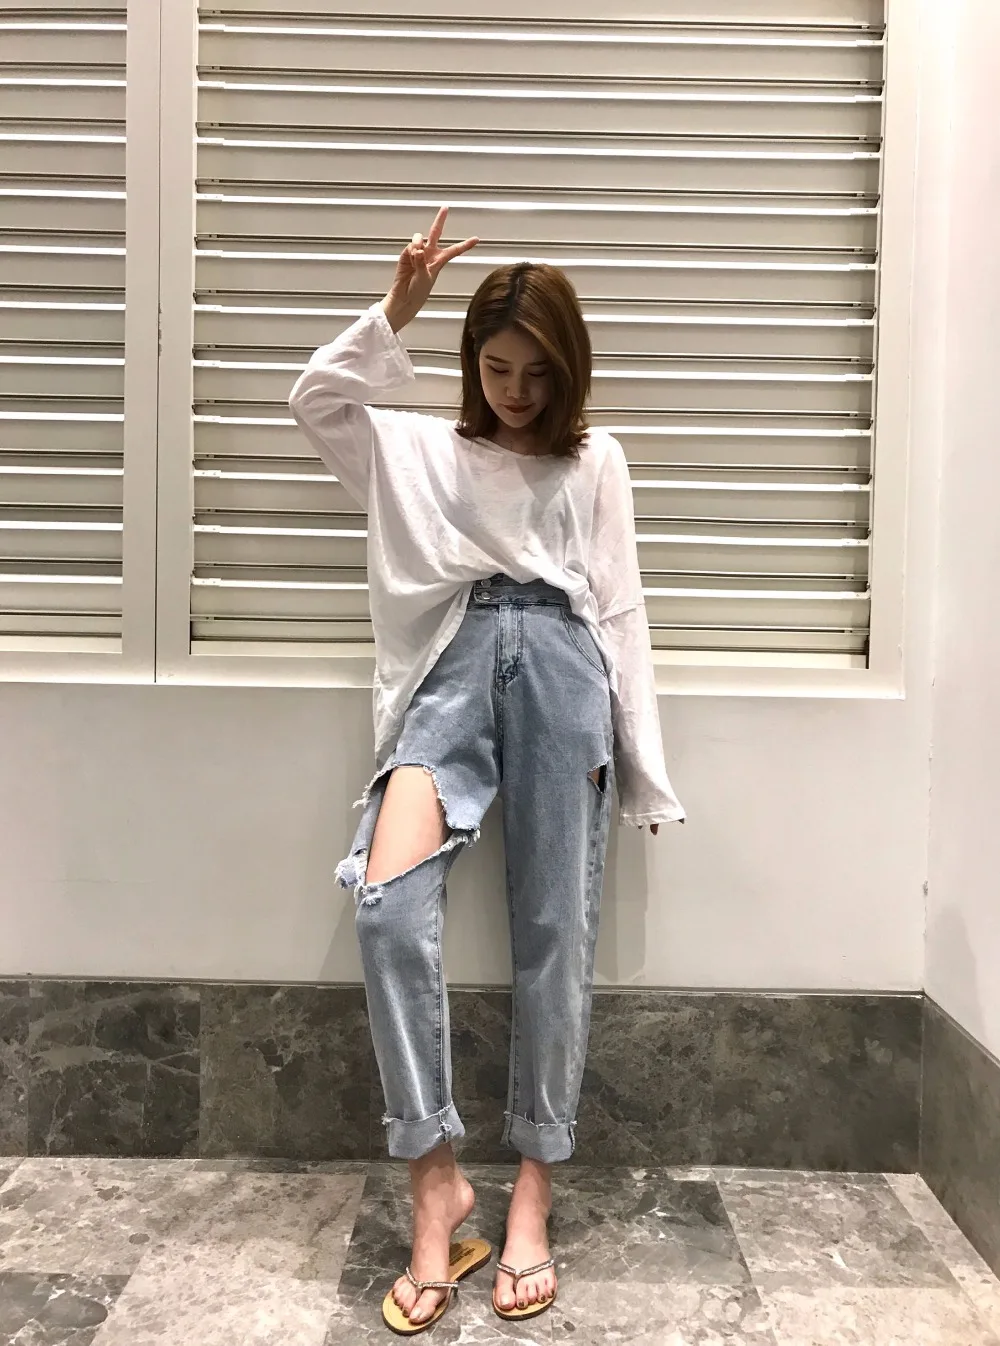 DICLOUD новые корейские свободные рваные джинсы женские модные повседневные уличные шаровары женские 2018 Boyfriend стиль с высокой талией джинсы